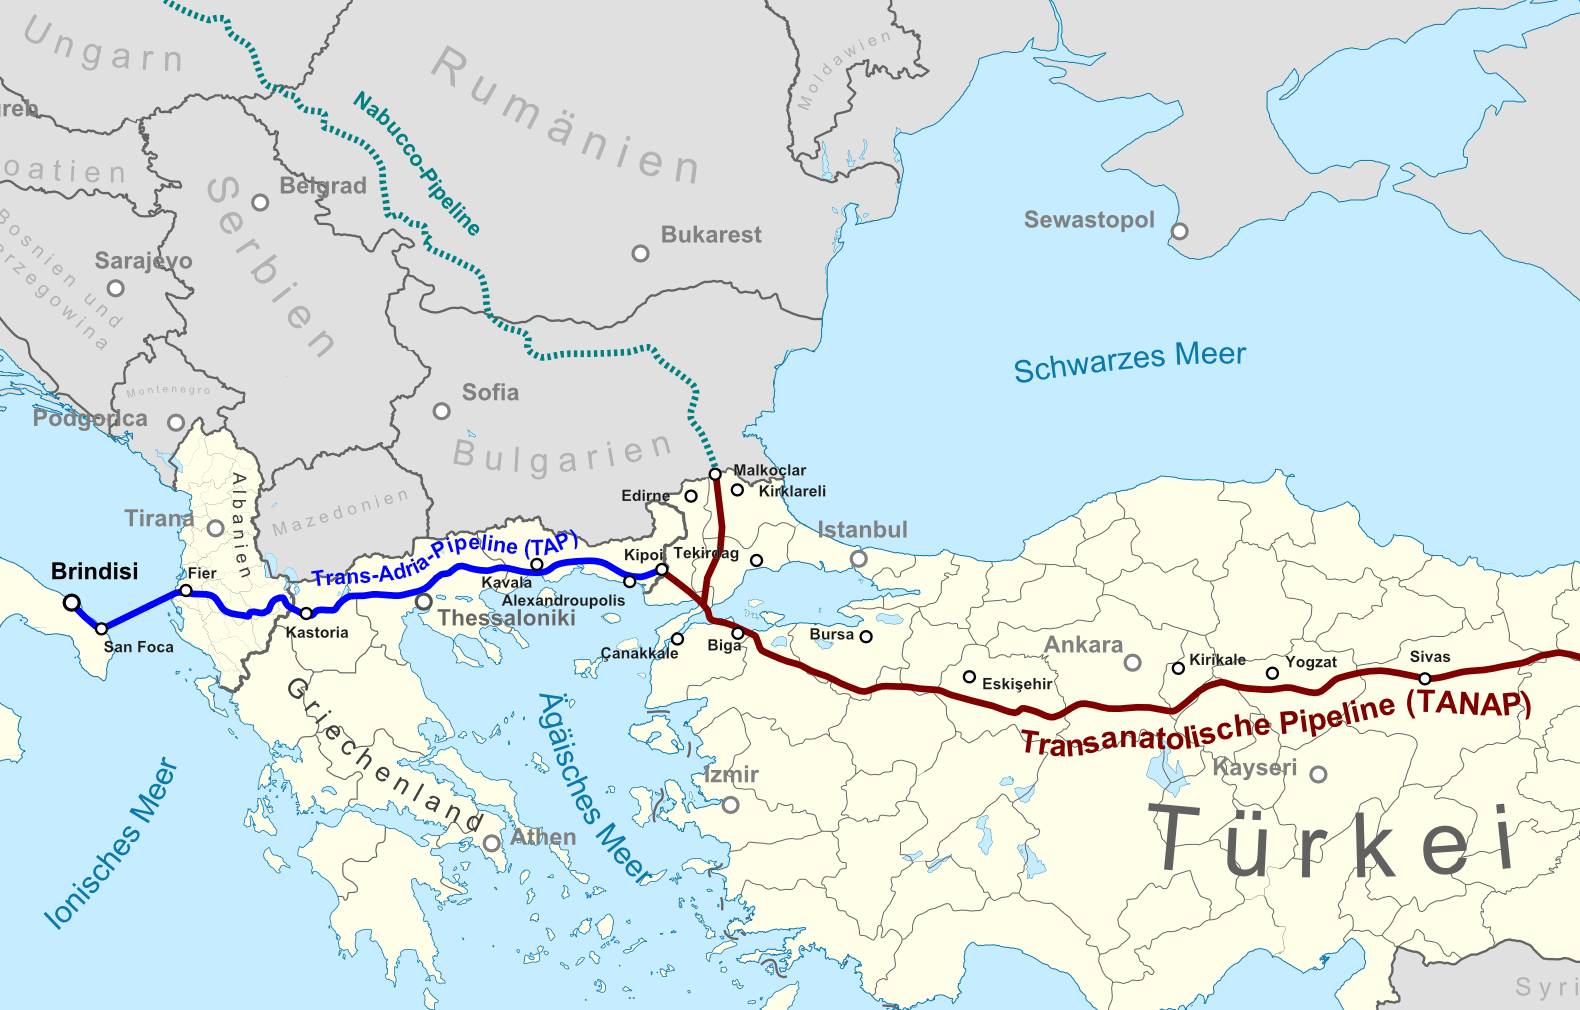 Трансанатолийский газопровод (TANAP; отмечен красным)